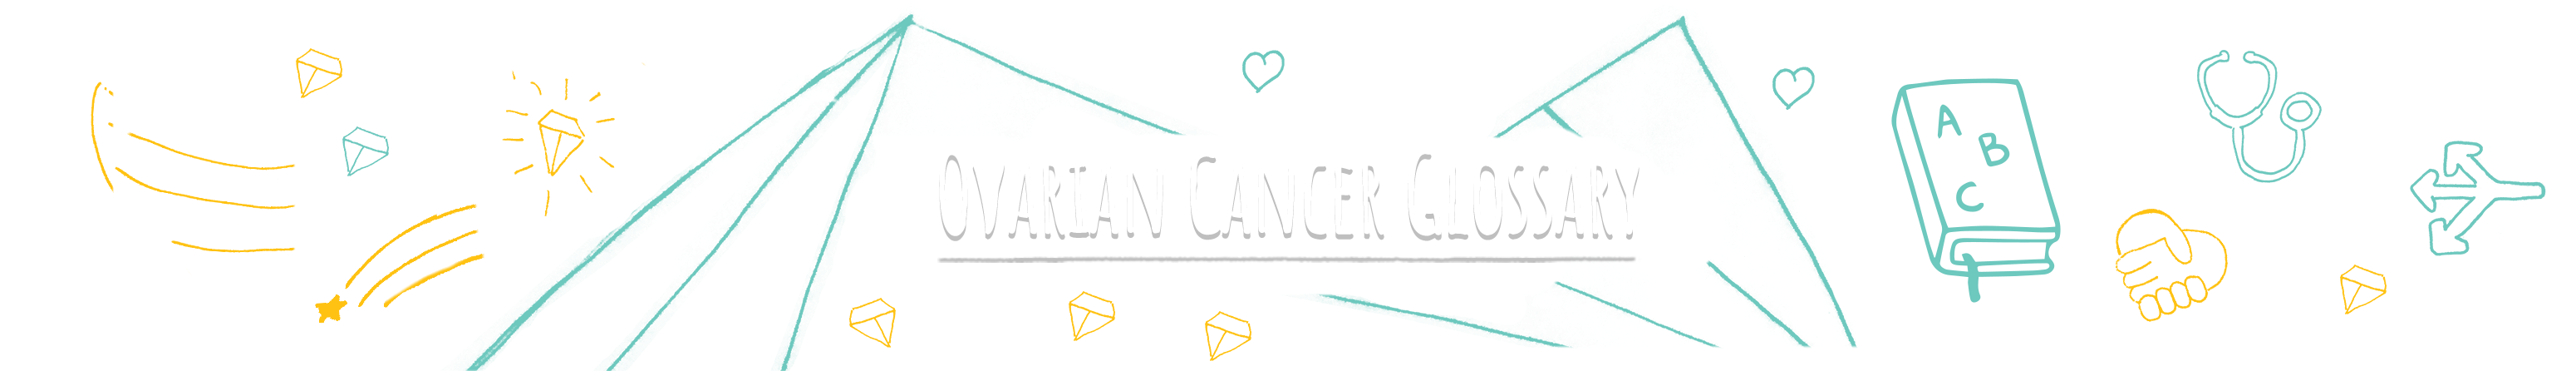 Ovarian Cancer Glossary